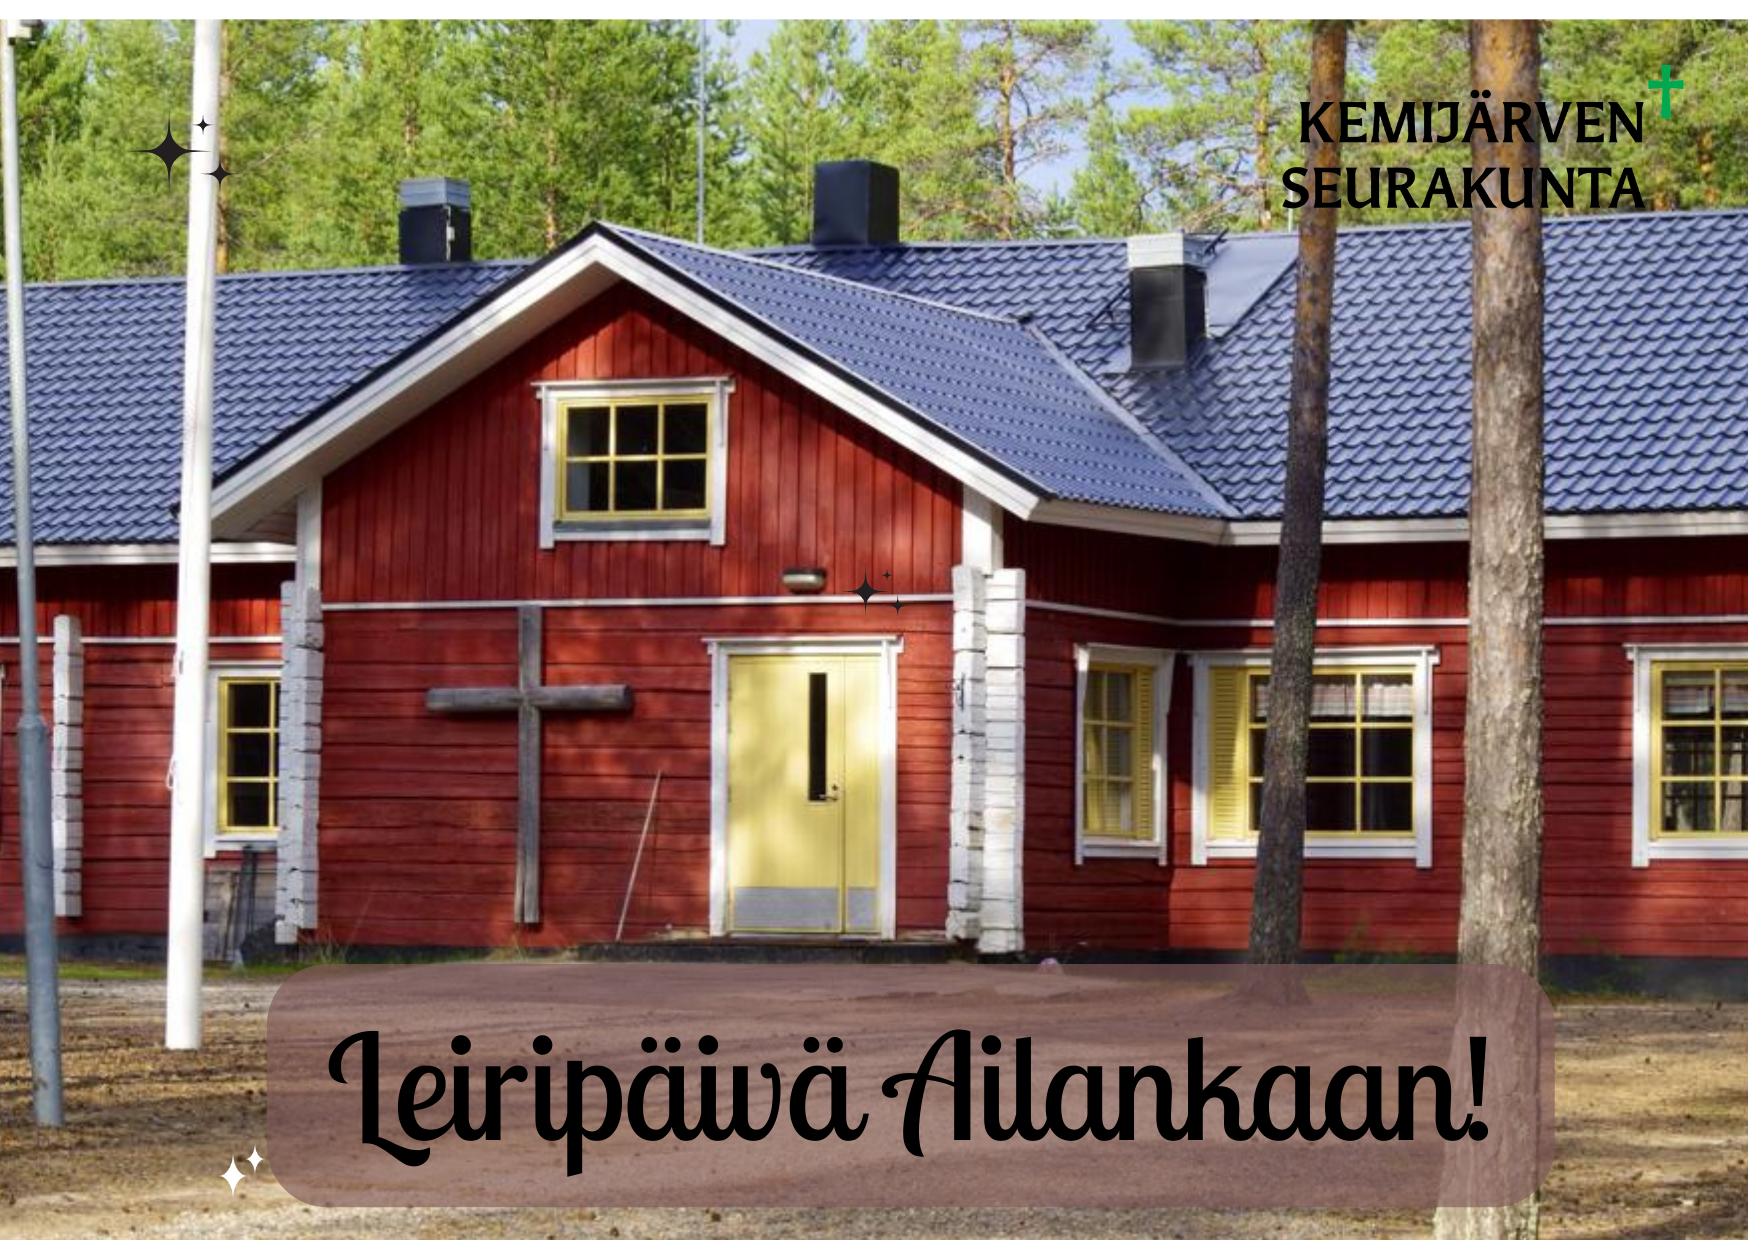 Kuvassa Ailangan leirikeskus, päällä teksti Leiripäivä Ailankaan. Kuva: Pentti Tepsa